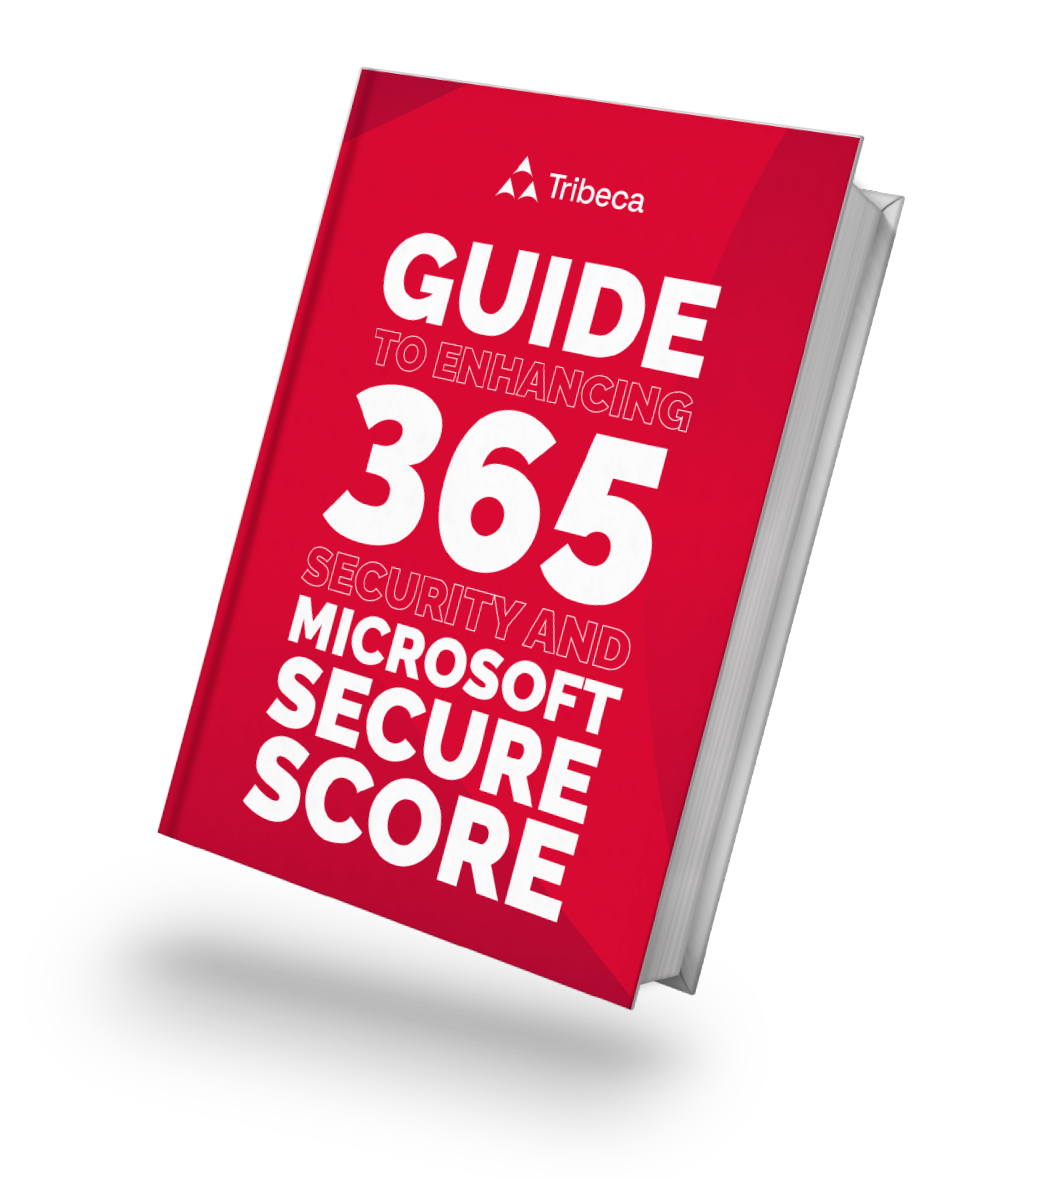 Tribeca-Microsoft-Secure-Score-guide-cover-1